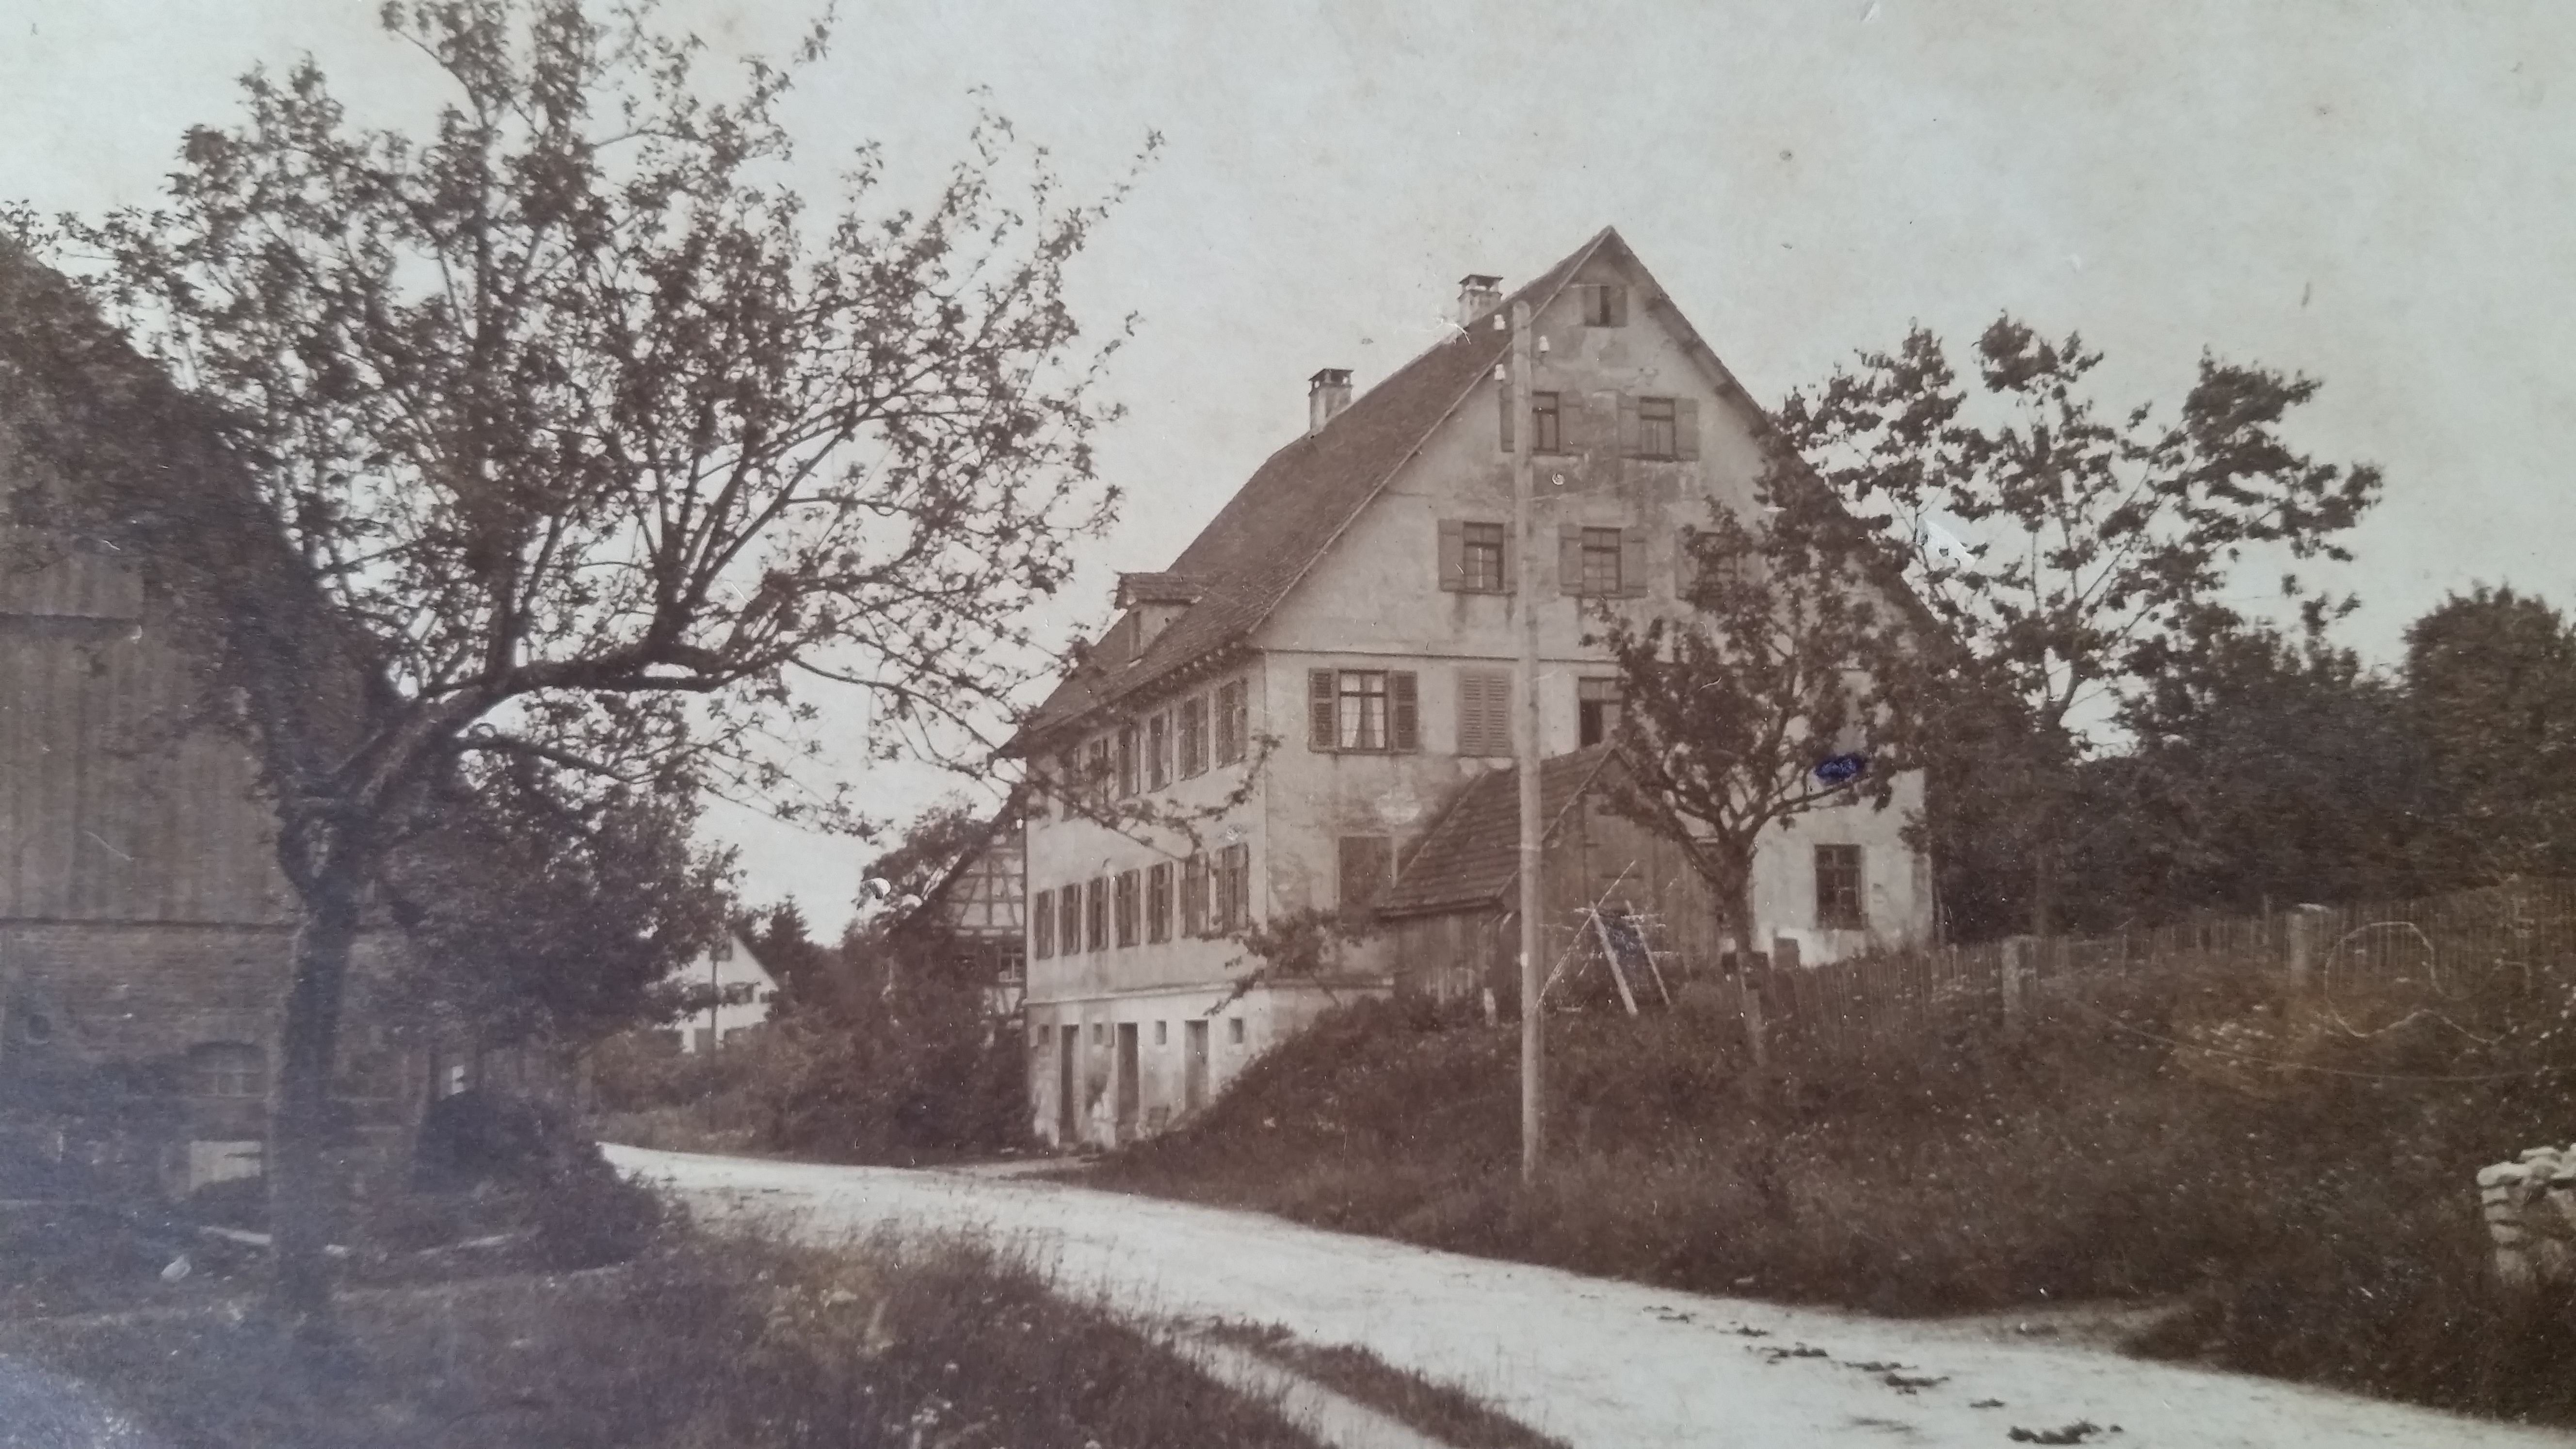 Haus auf jeden Fall vor 1928